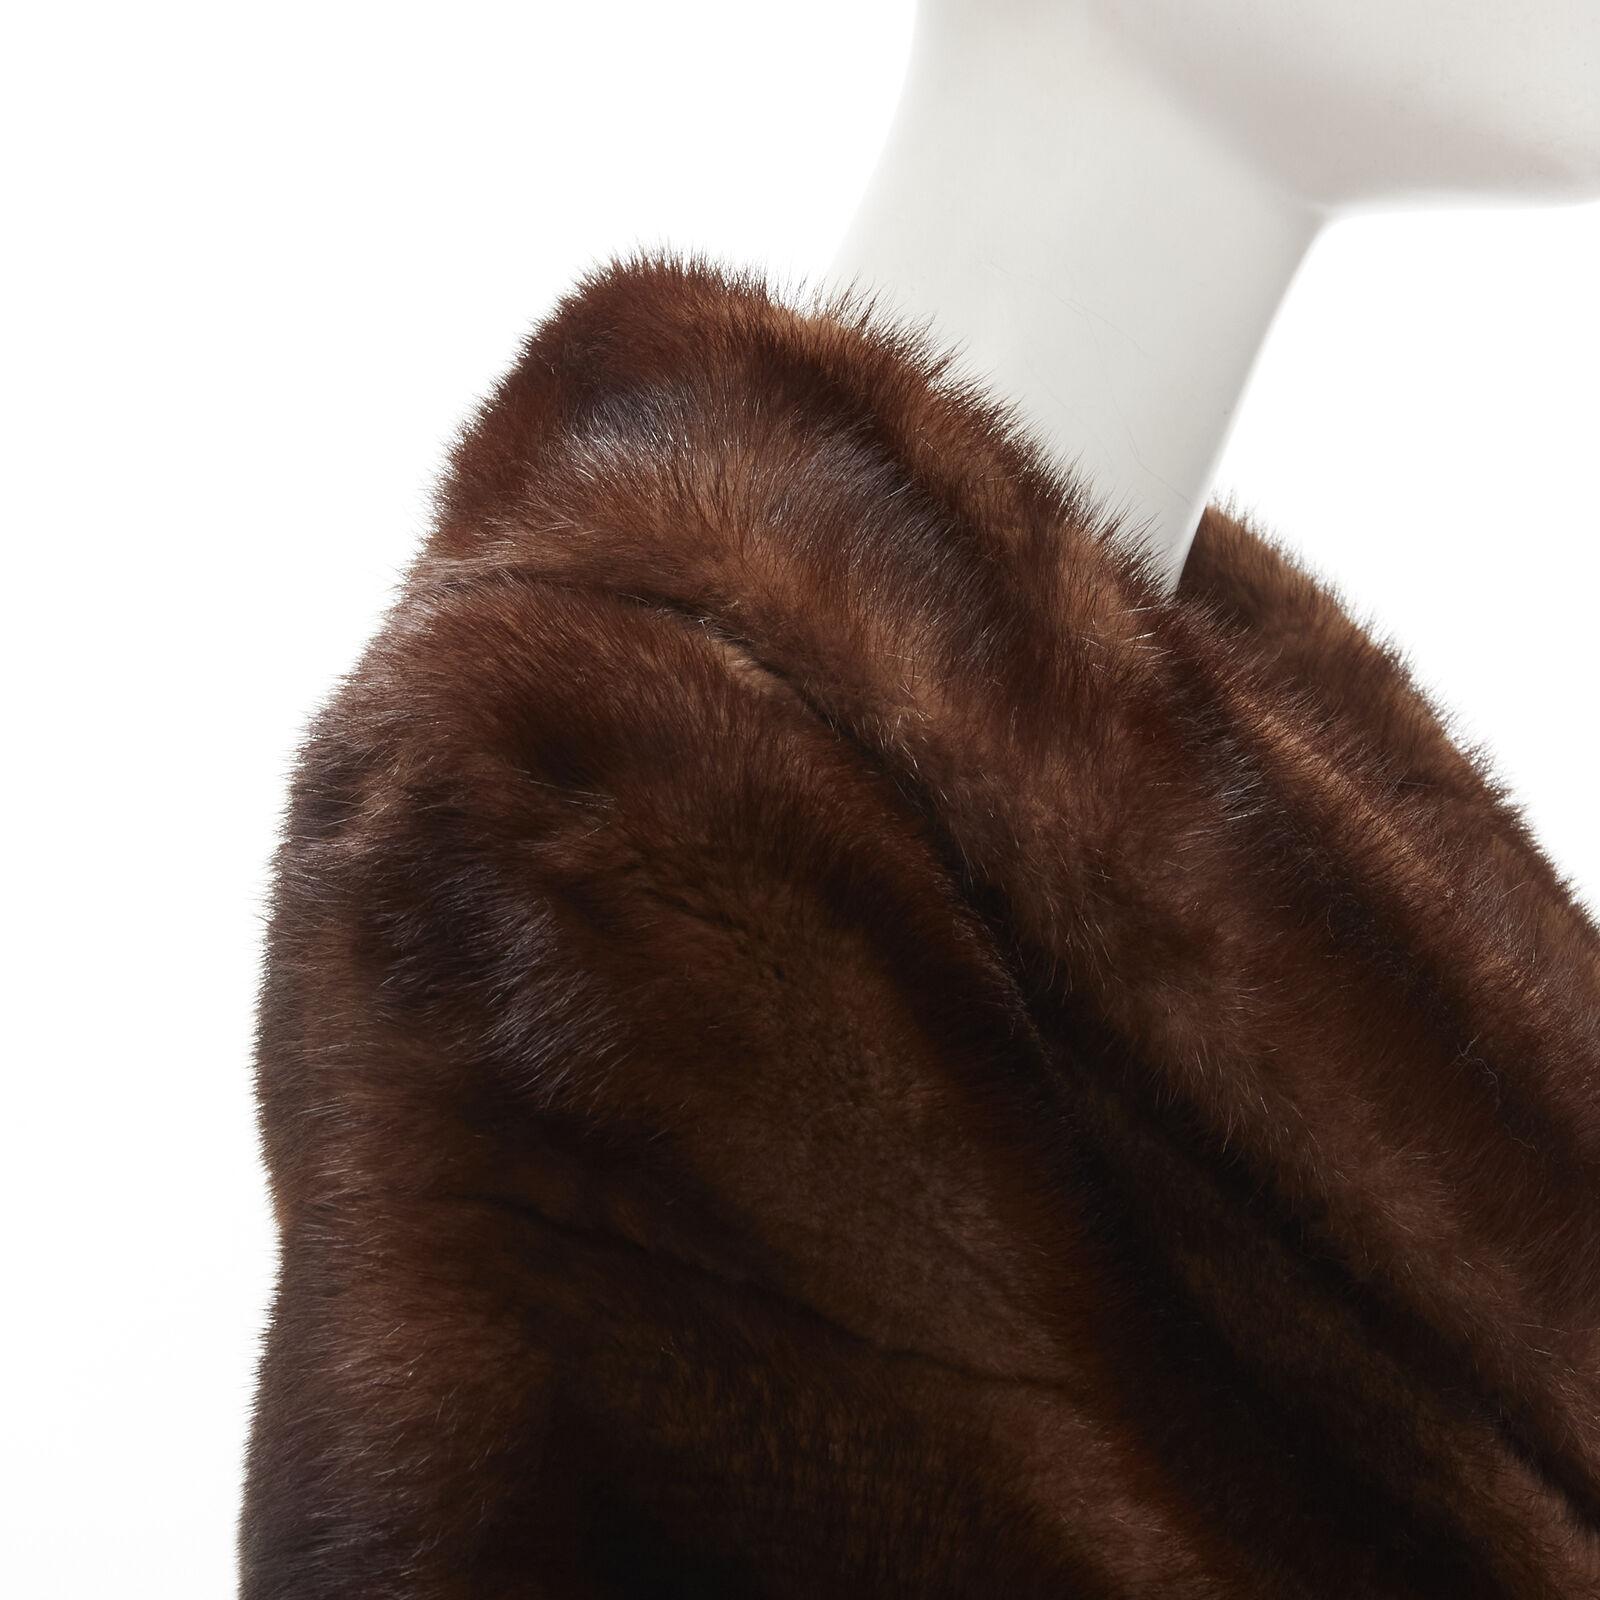 UNLABELLED brown mink fur shoulder shawl scarf hook eye closure For Sale 2